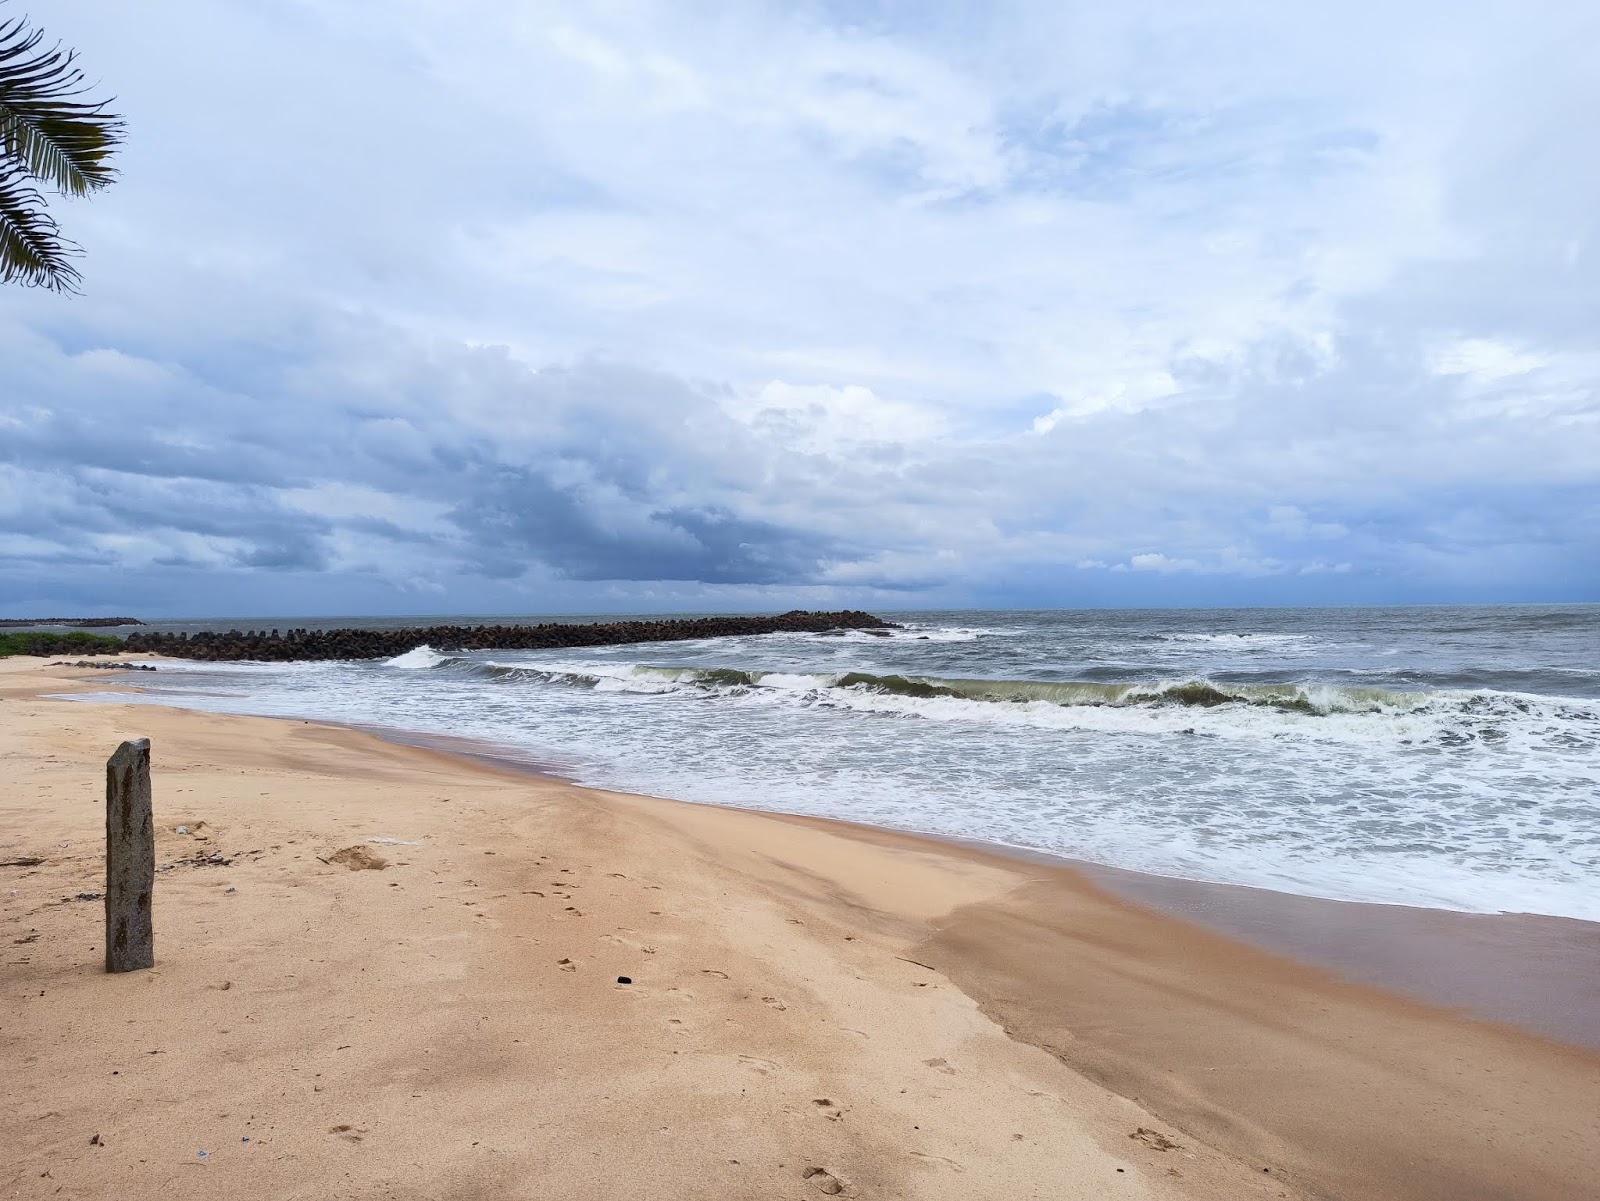 Valokuva Akalabailu beachista. pinnalla turkoosi vesi:n kanssa